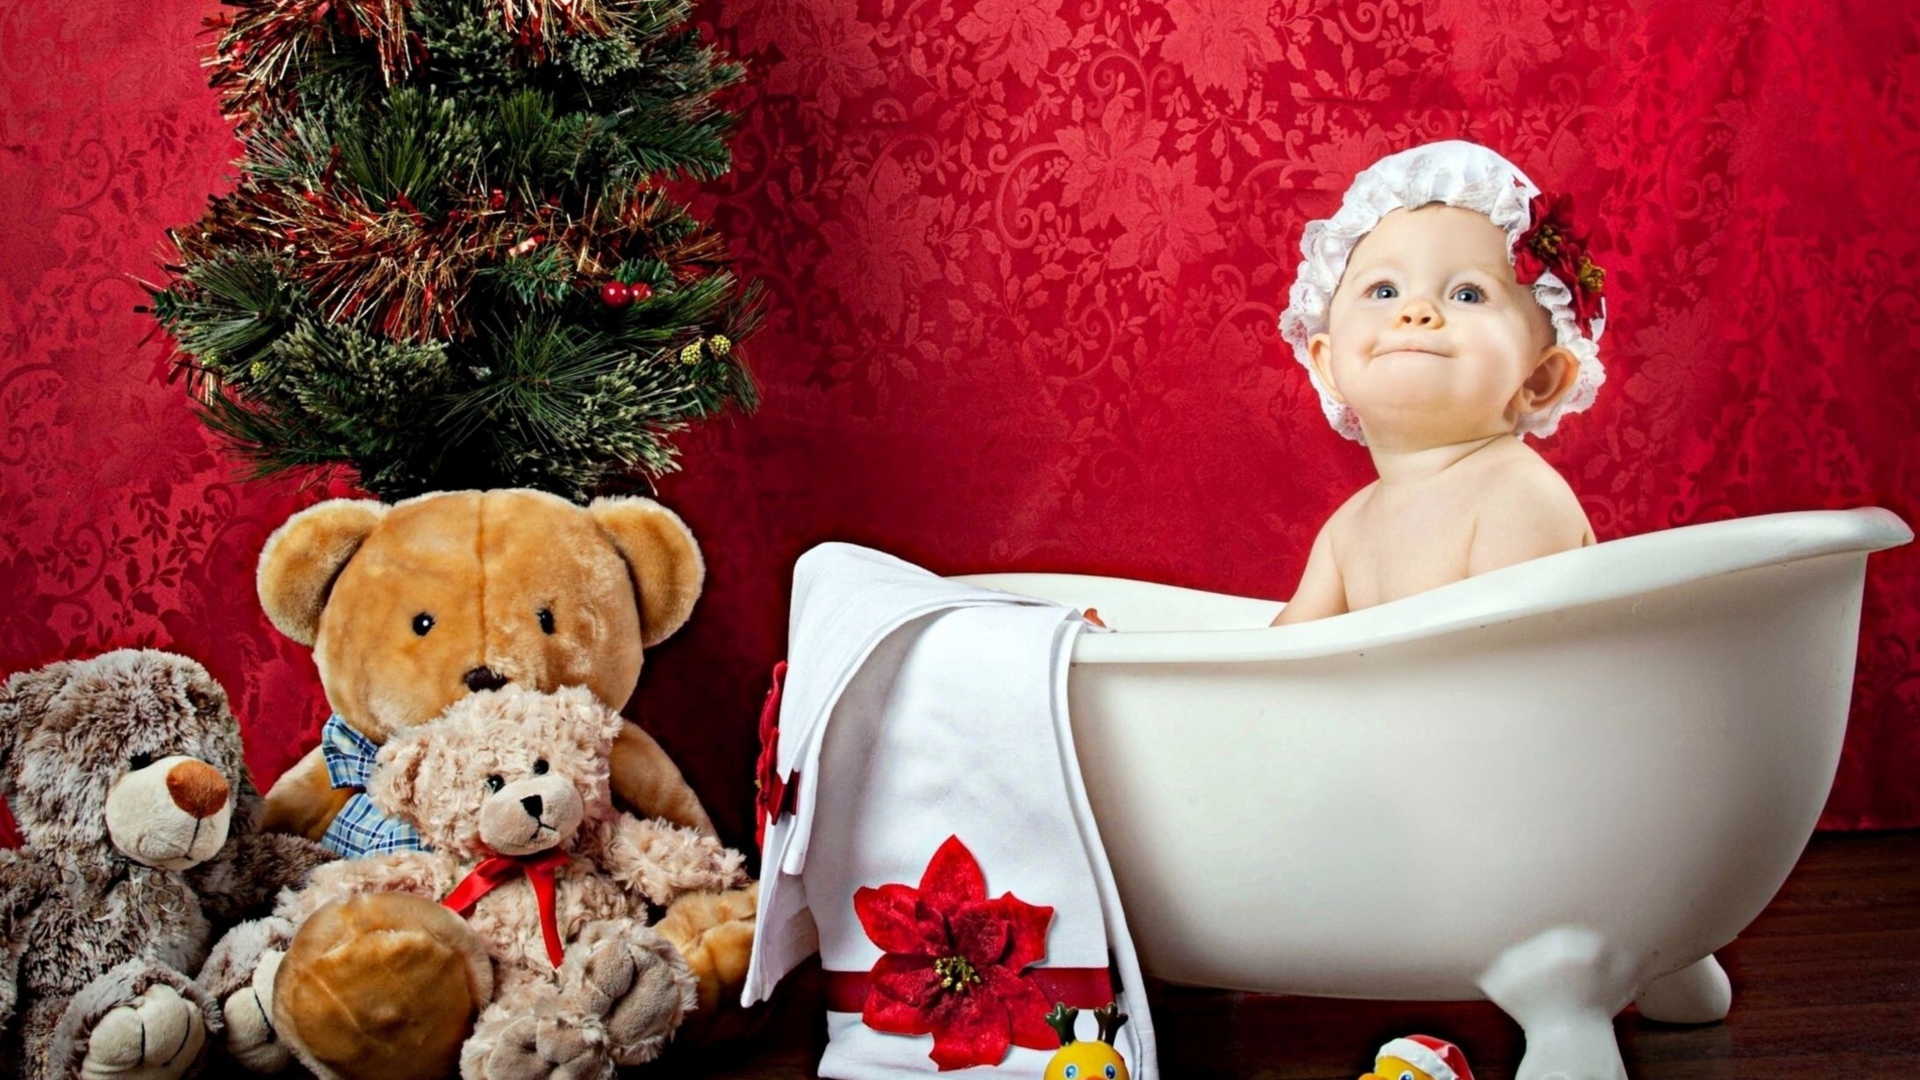 Маленькая девочка сидит в белой ванне у елки с игрушками